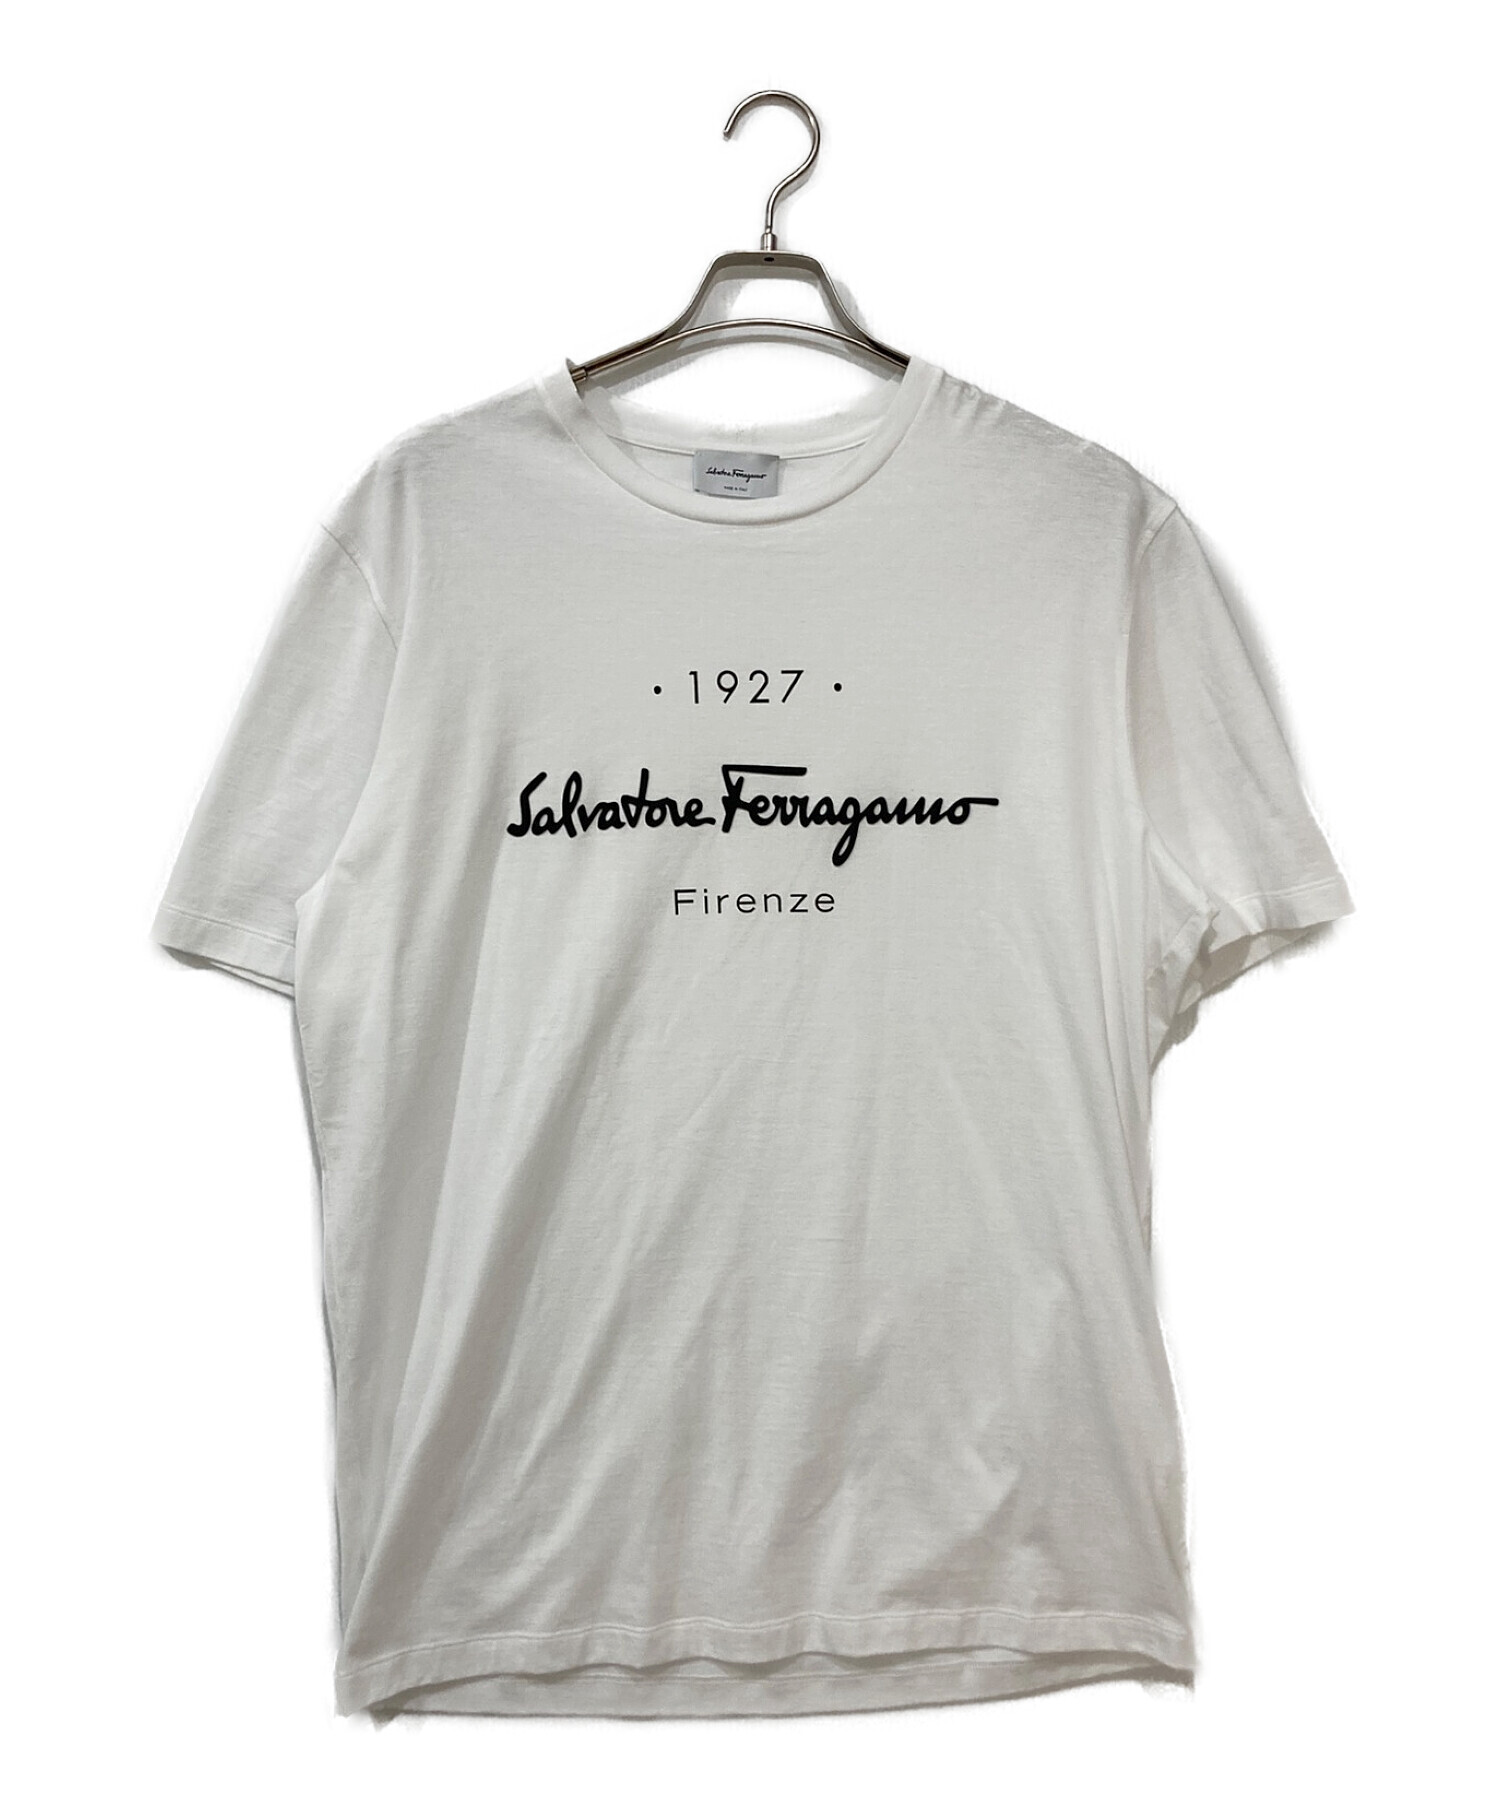 Salvatore Ferragamo (サルヴァトーレ フェラガモ) コットンロゴTシャツ ホワイト サイズ:XL